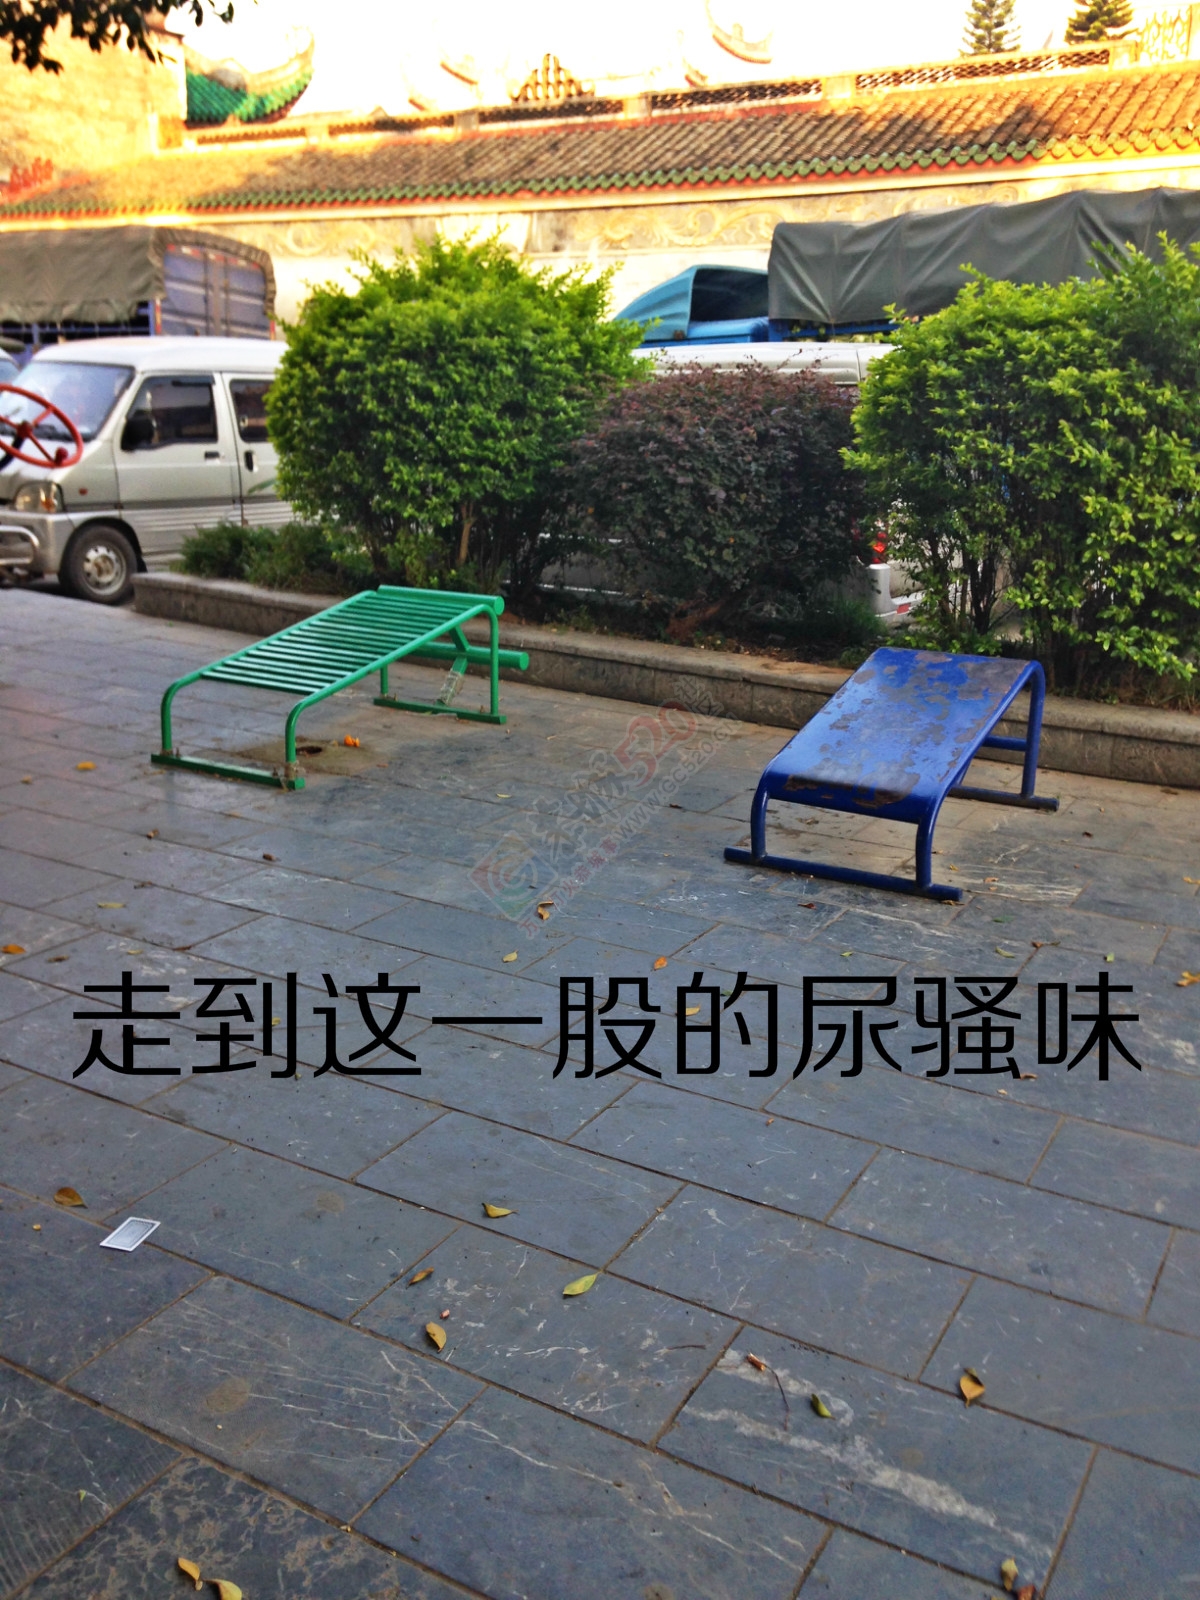 昔日的小广场如今已成了“垃圾堆”431 / 作者:恭城520小奈姐姐 / 帖子ID:128568